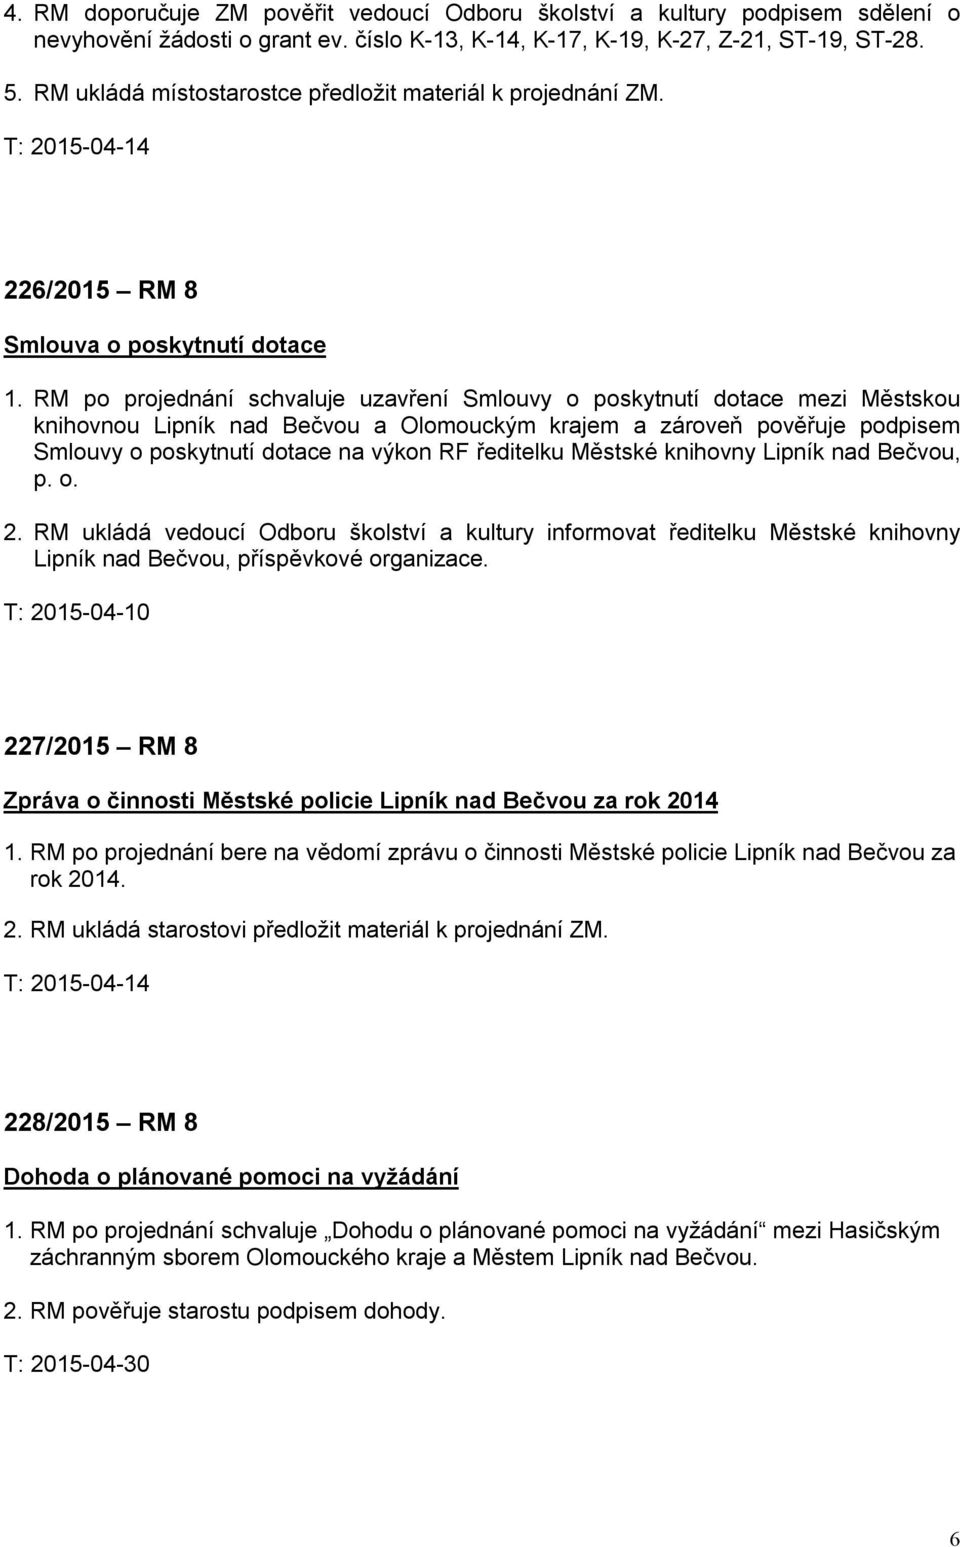 RM po projednání schvaluje uzavření Smlouvy o poskytnutí dotace mezi Městskou knihovnou Lipník nad Bečvou a Olomouckým krajem a zároveň pověřuje podpisem Smlouvy o poskytnutí dotace na výkon RF